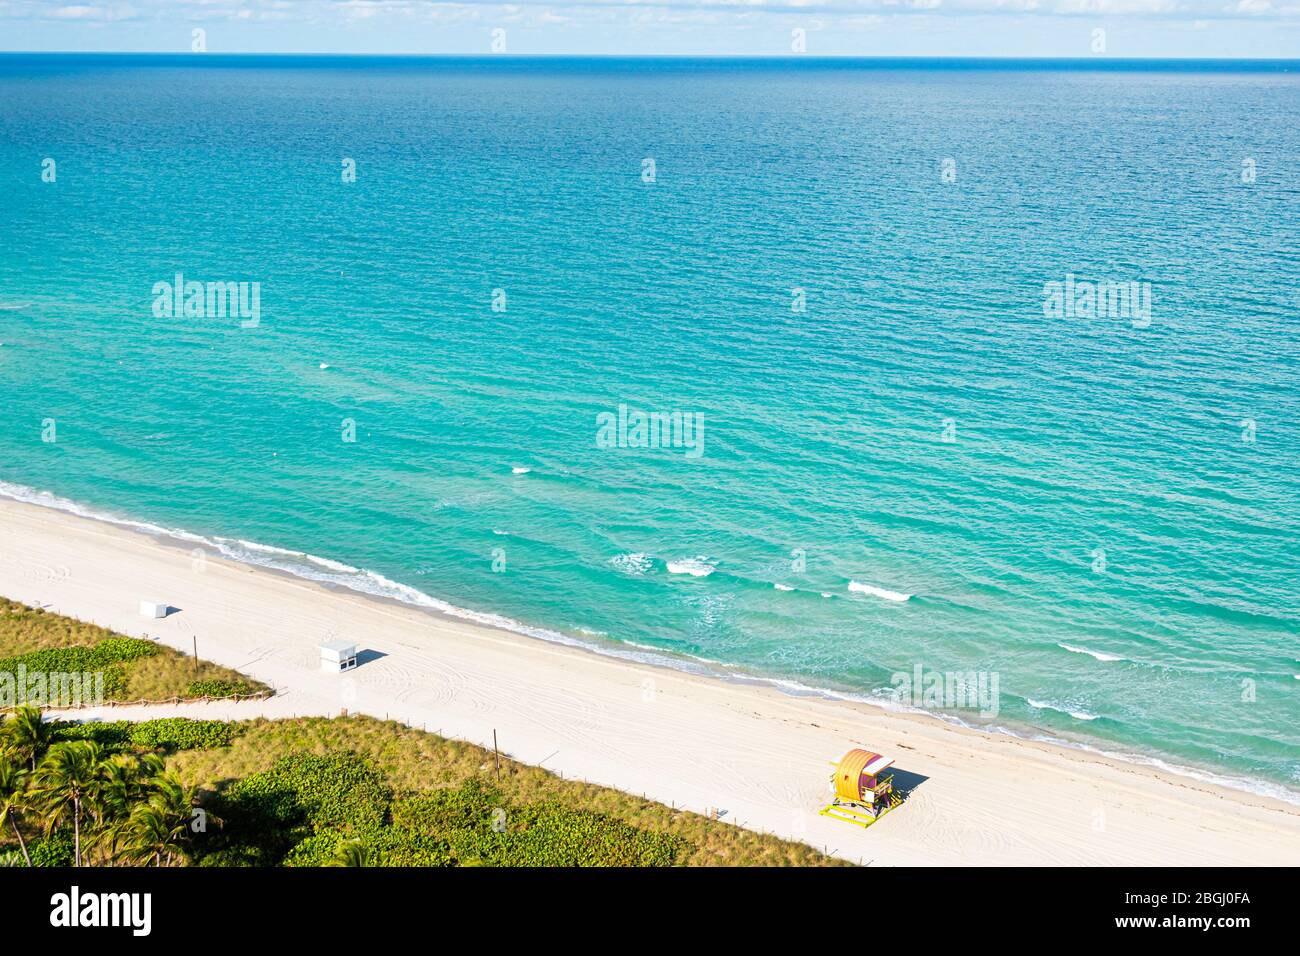 Miami Beach Florida,North Beach,coronavirus Covid-19 pandémie de crise,Atlantique océan eau, maire fermé vide déserte plages publiques vacantes sable rivage Banque D'Images